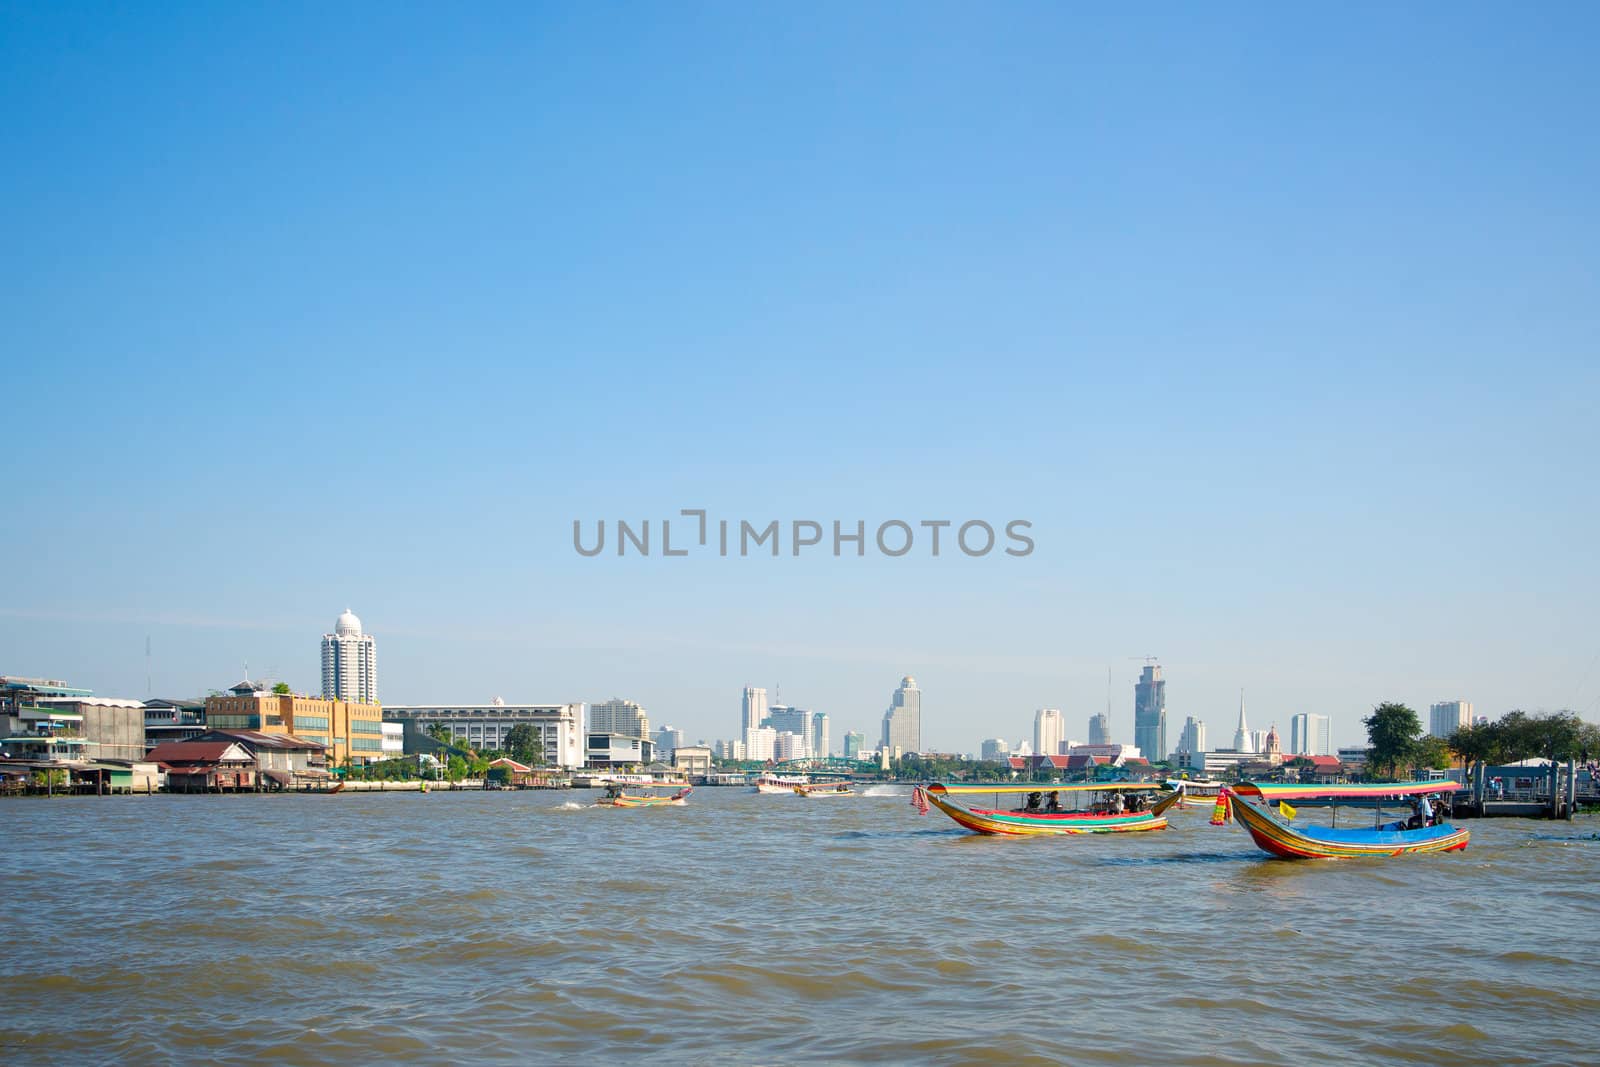 Boats on the Chao Phraya river in Bangkok